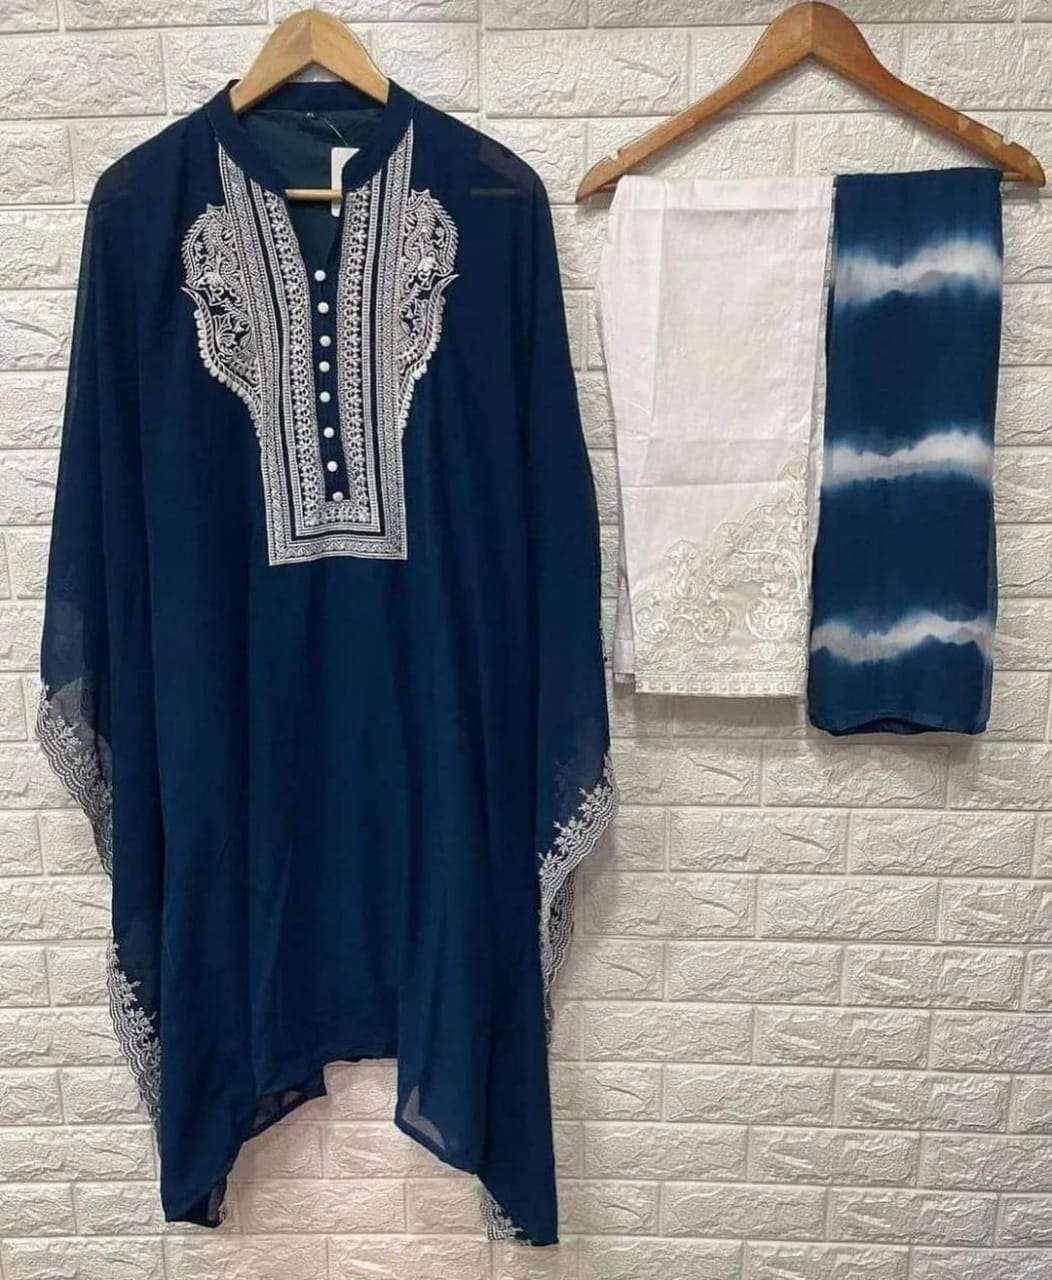 iznik 1017 designer embroidered tunic pant with designer dupatta set wholesale price surat